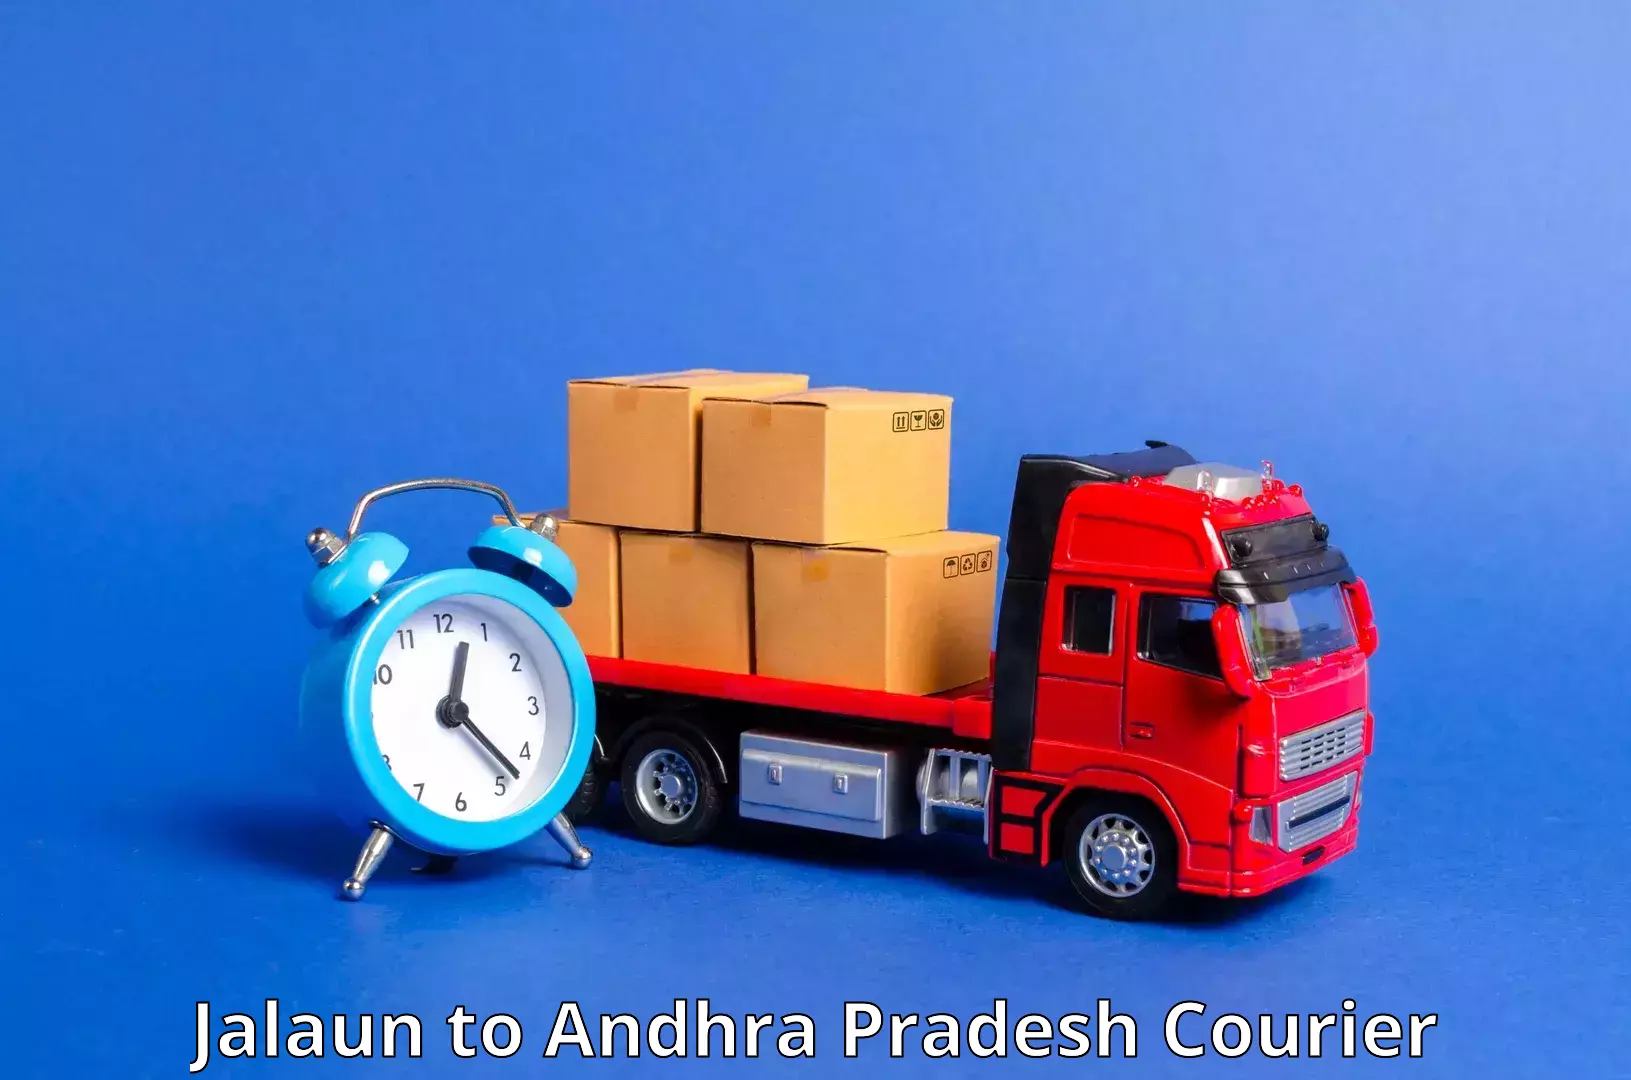 Global logistics network Jalaun to Andhra Pradesh